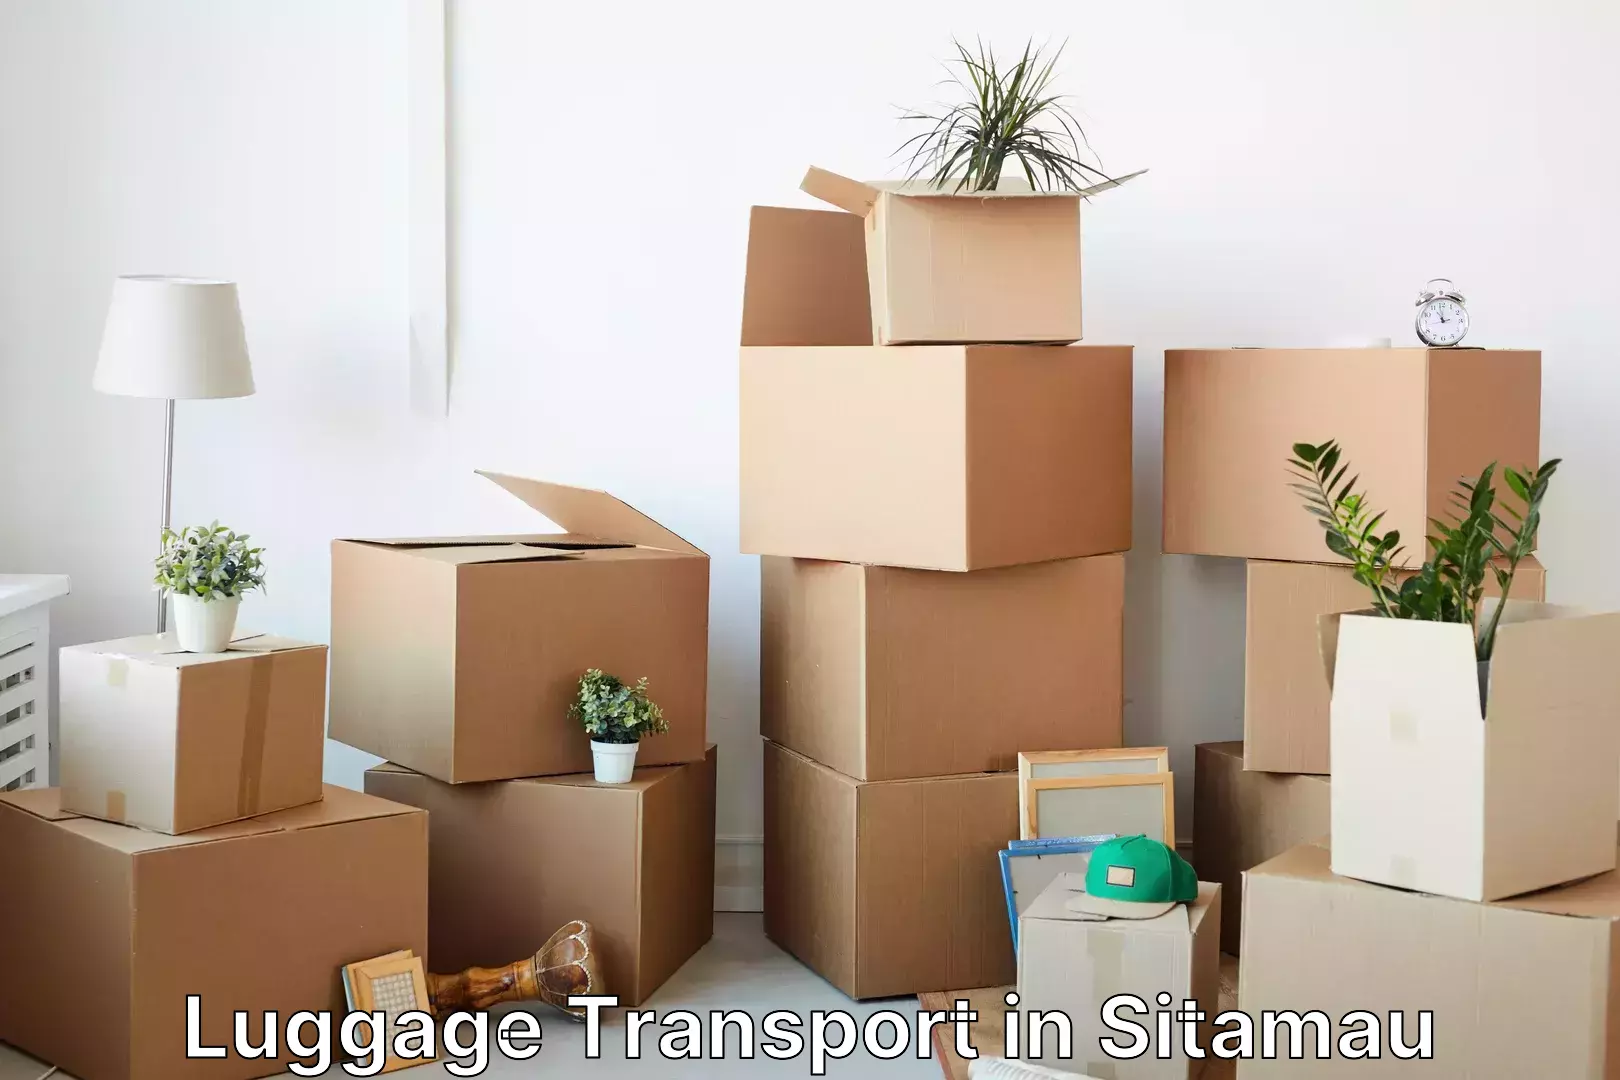 Baggage transport network in Sitamau